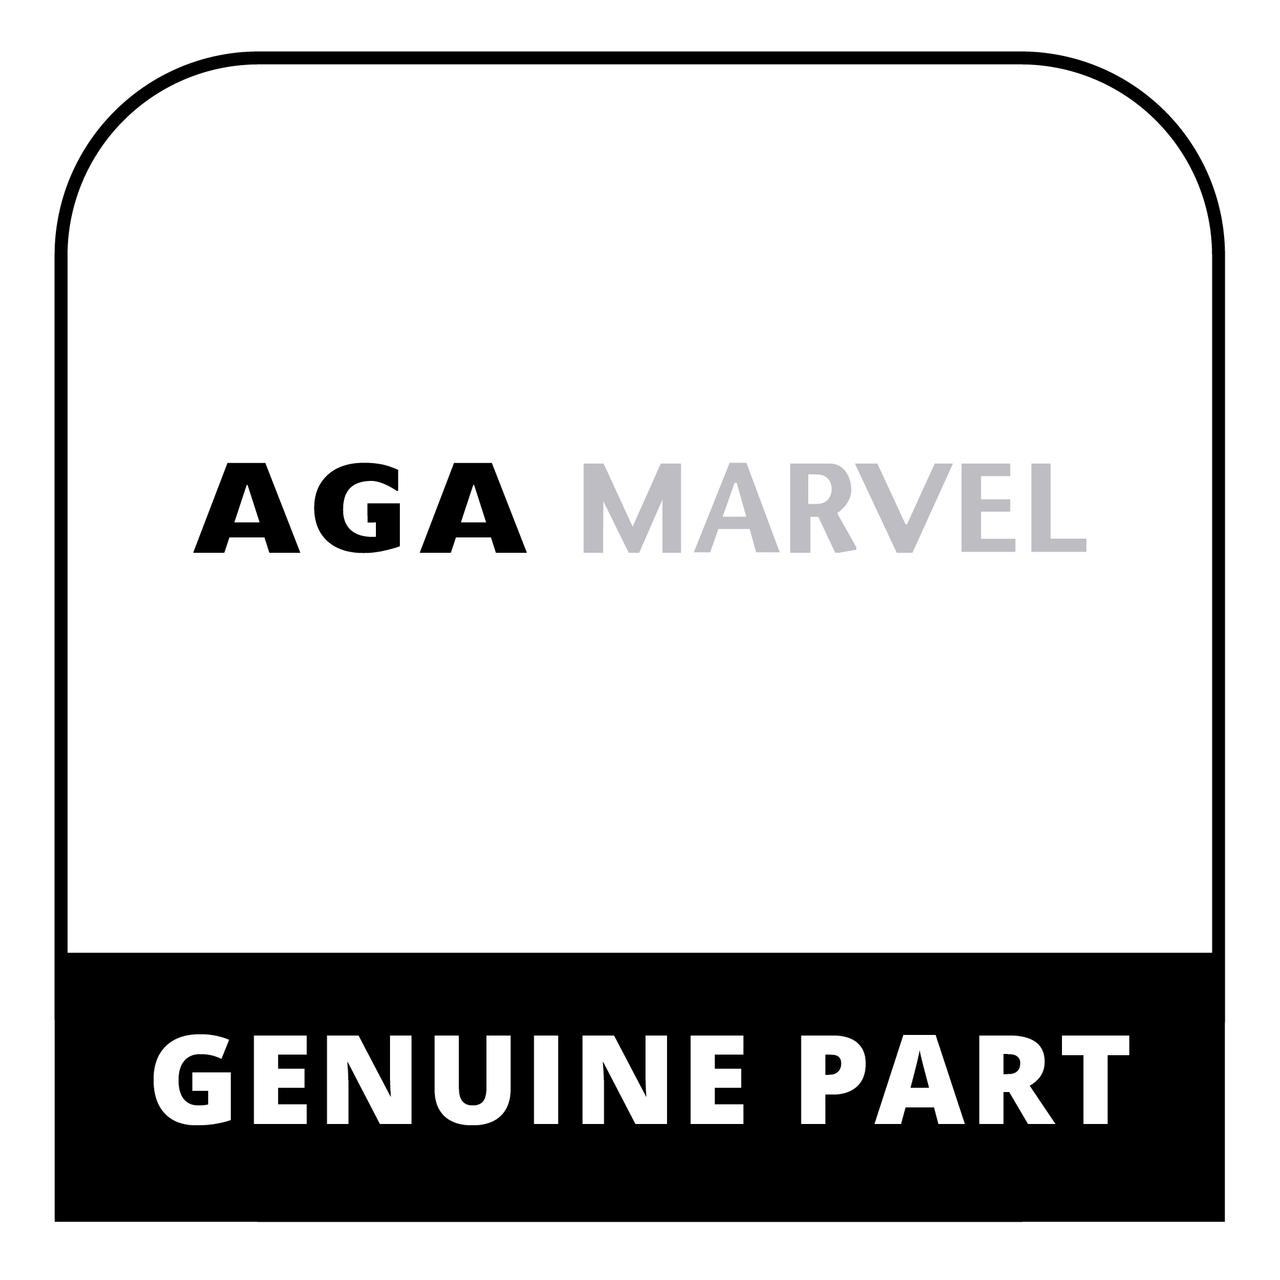 AGA Marvel R5807 - M5 Fascia Screw - Genuine AGA Marvel Part